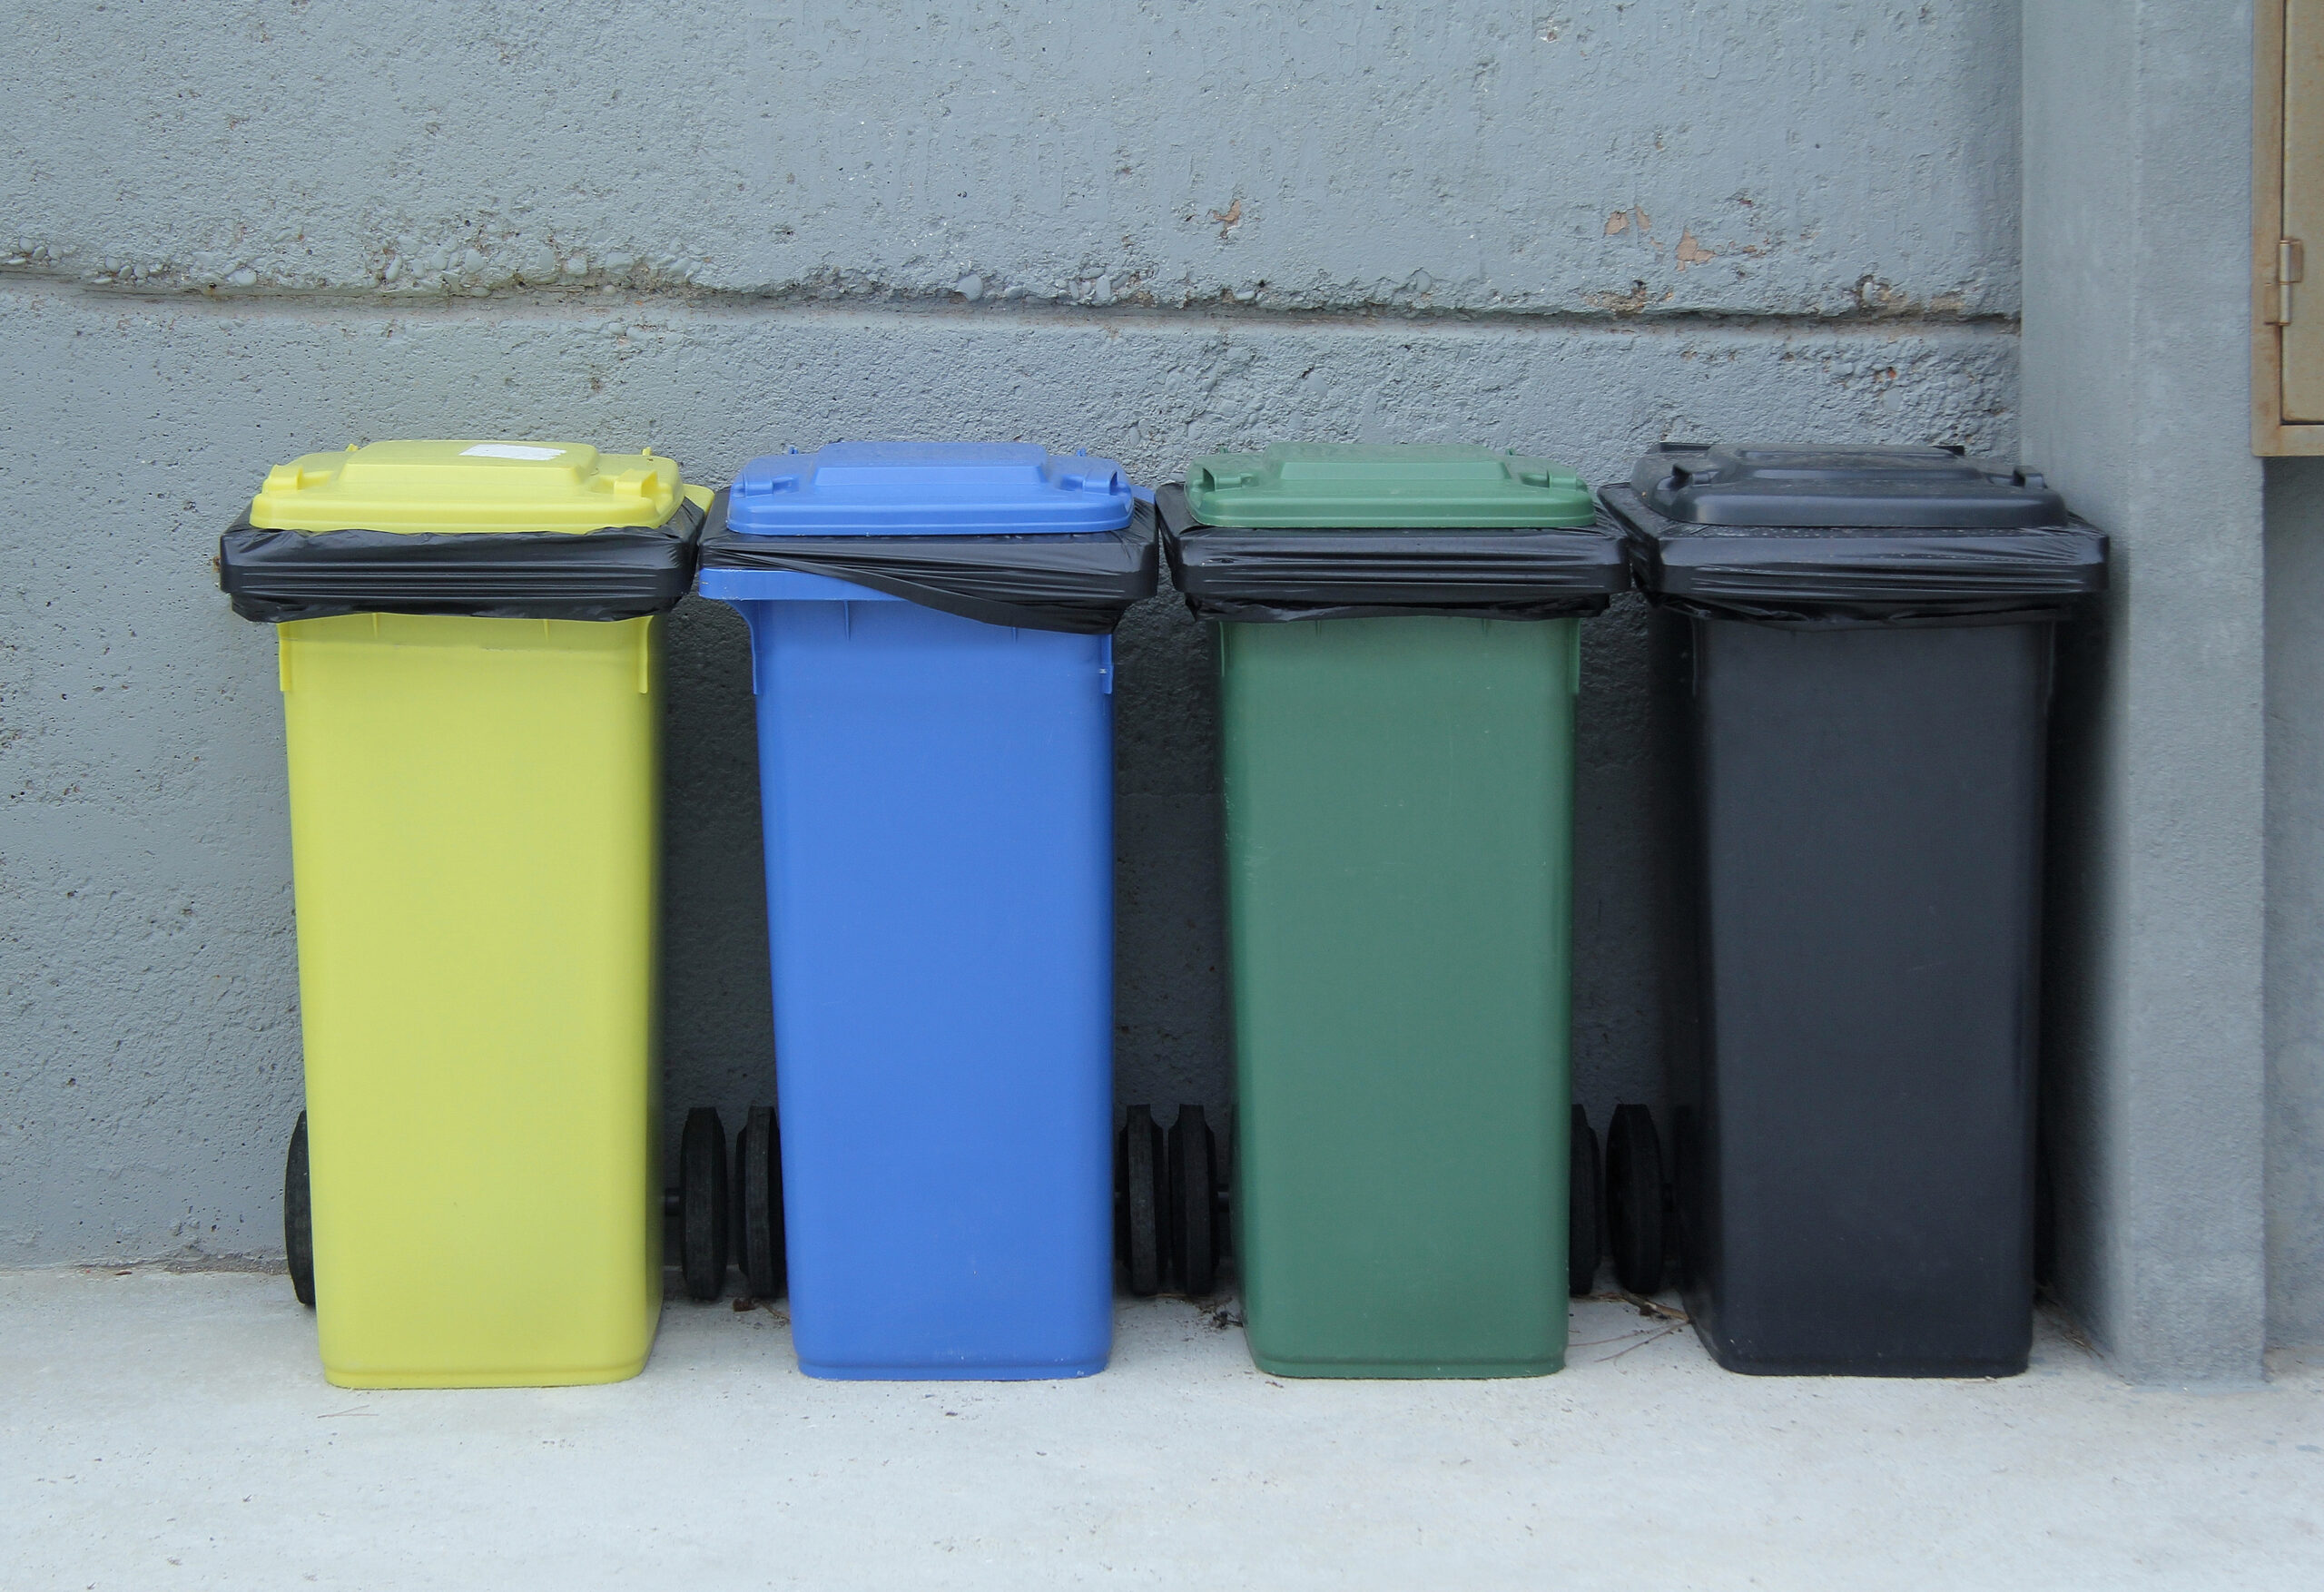 Müllcontainer in gelb, blau, grün und schwarz